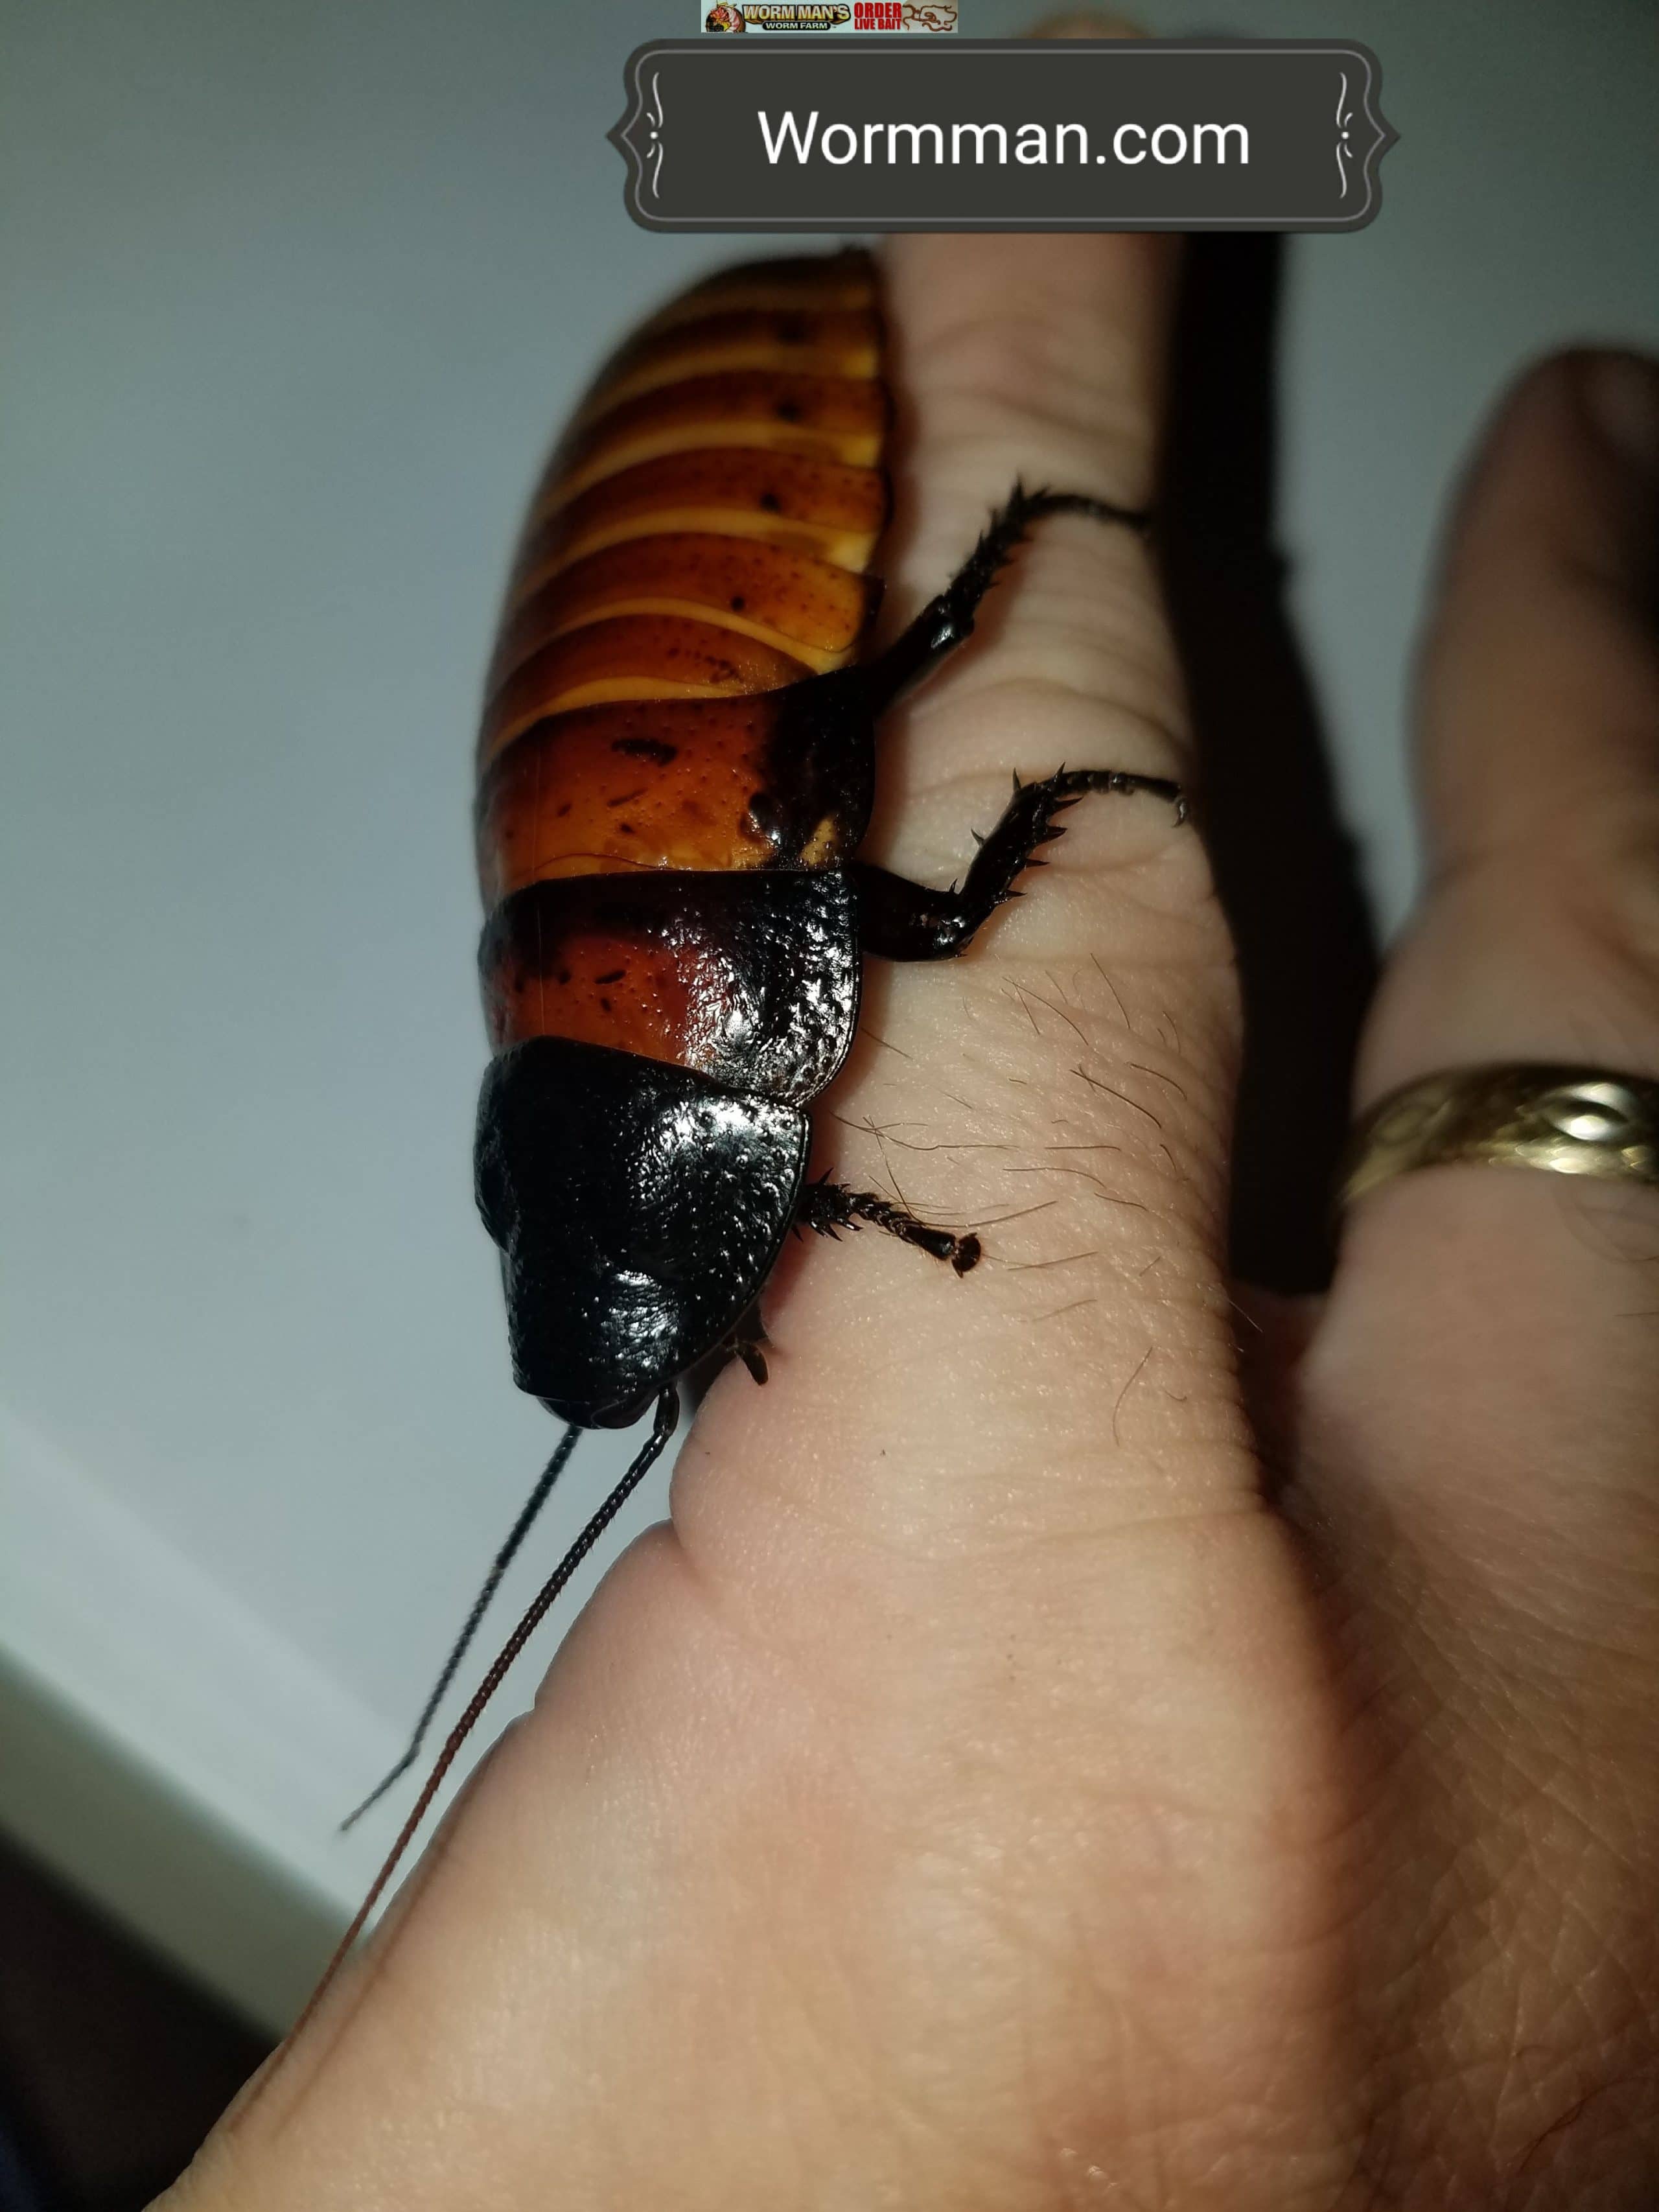 Madagascar Hissing Roach